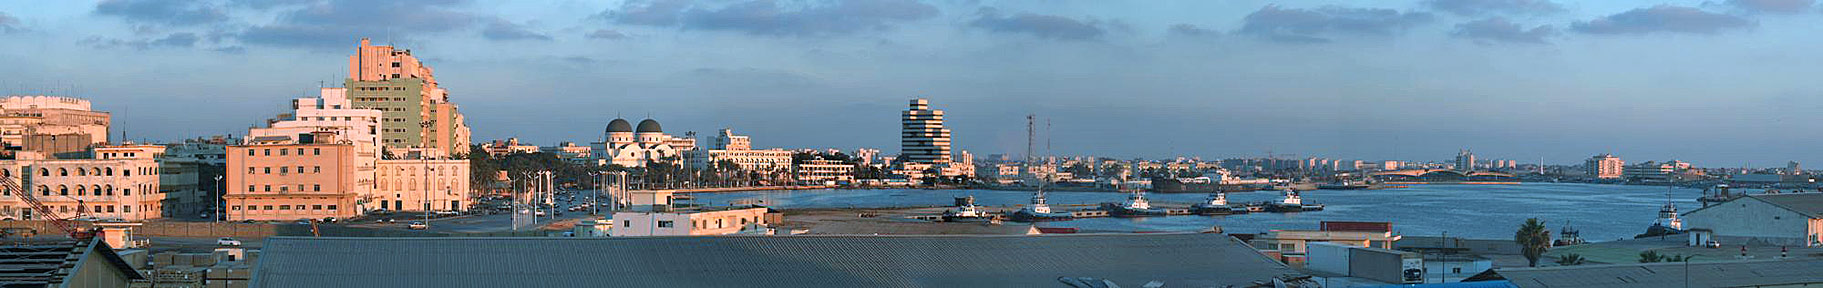 Panorama of Benghazi